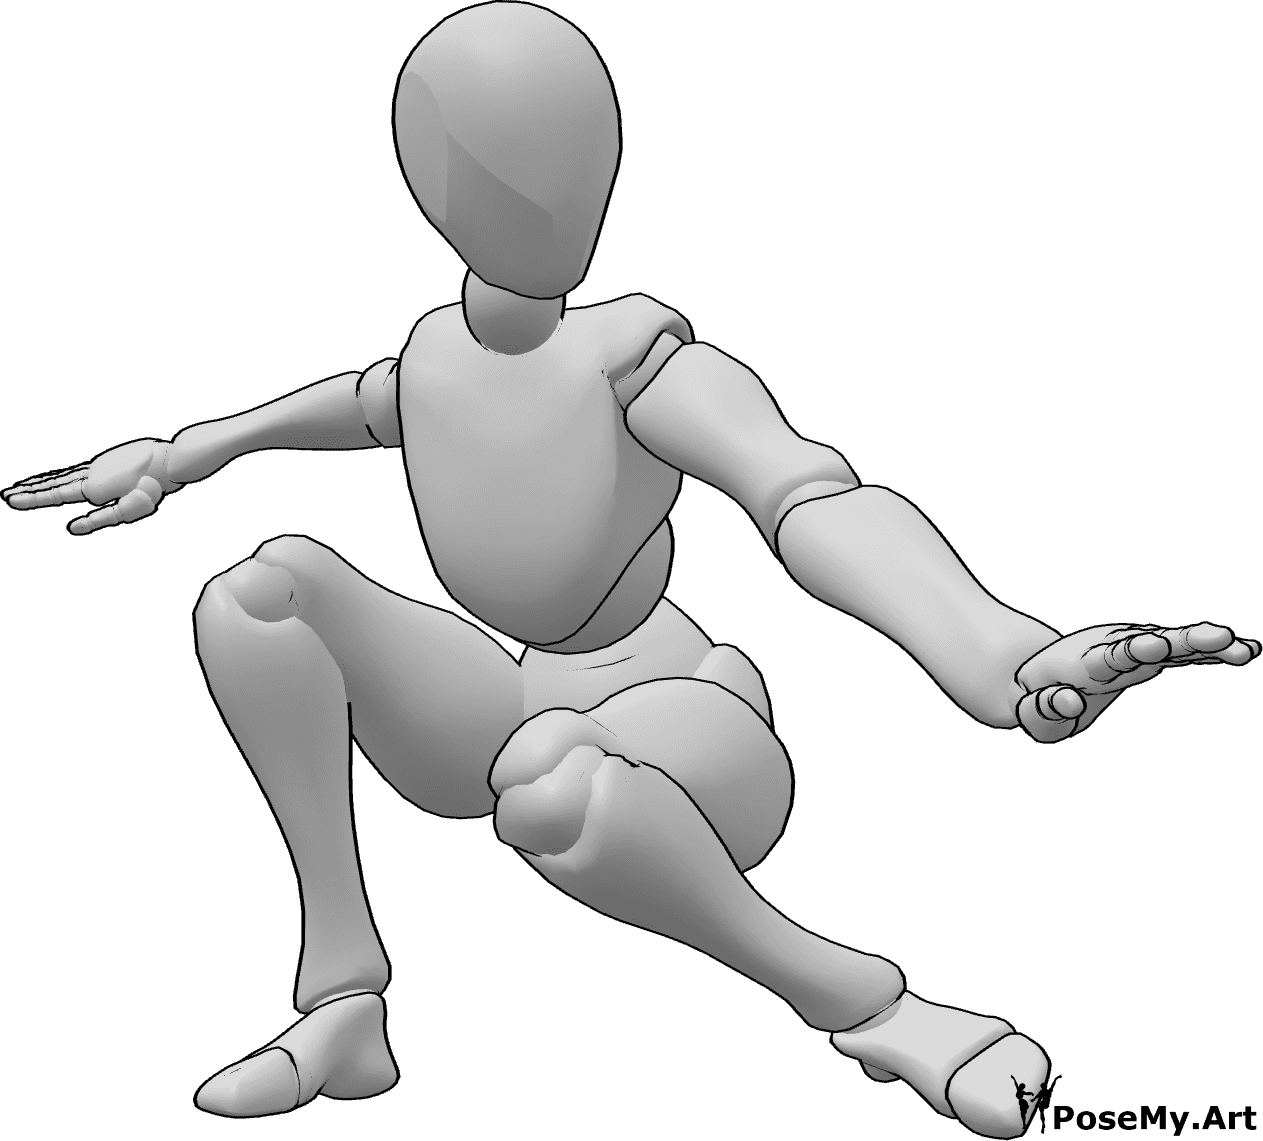 Referência de poses- Pose de aterragem de agachamento feminina - A mulher está a aterrar em pose de agachamento, equilibrando-se com as mãos, olhando para a esquerda e pronta para lutar